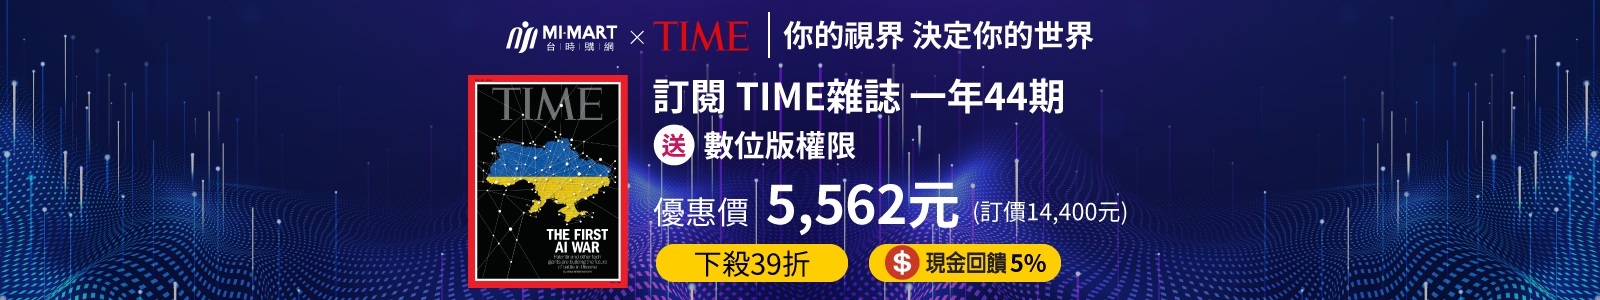 台時購網MI-MART，現金回饋5%，美國TIME時代雜誌台灣總代理，立即訂閱享最低4折起優惠，時事英文、取得第一手國際情勢的最佳選擇！ 